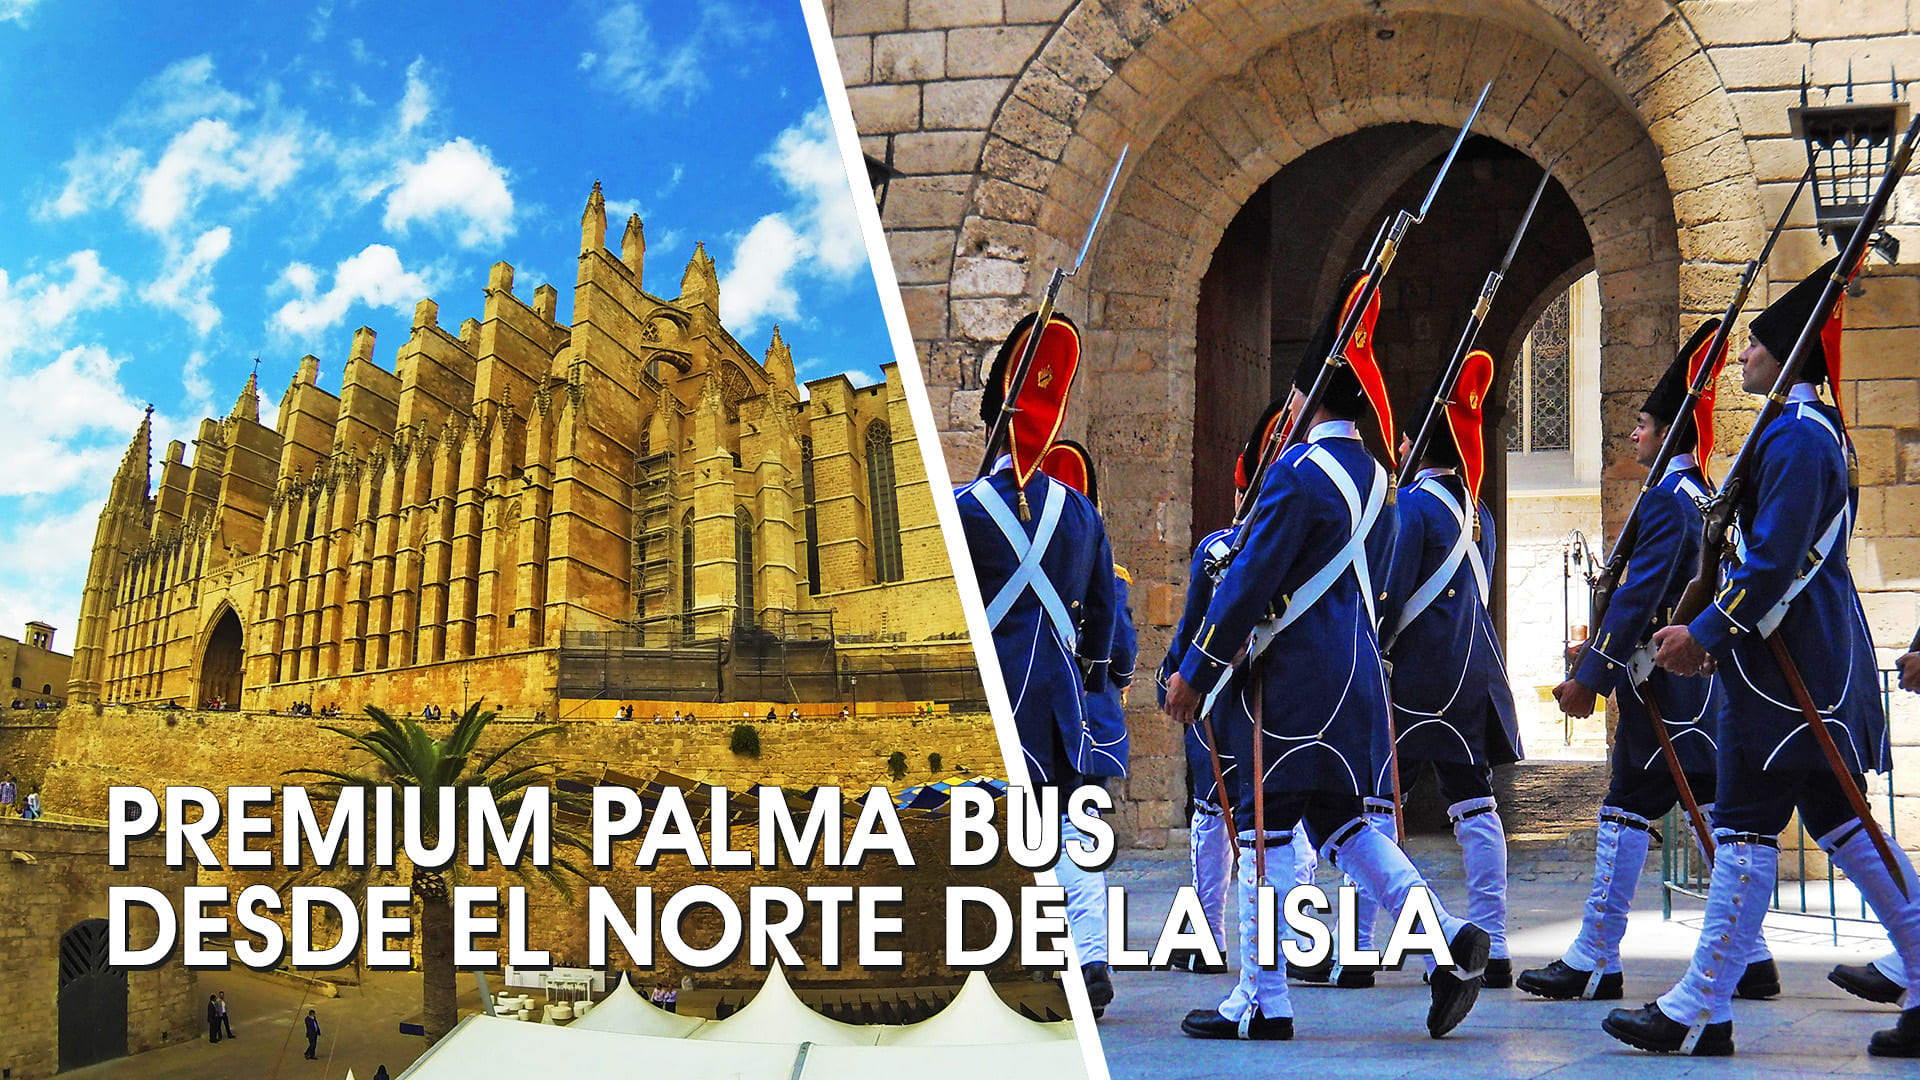 Premium Palma bus desde el norte de la isla